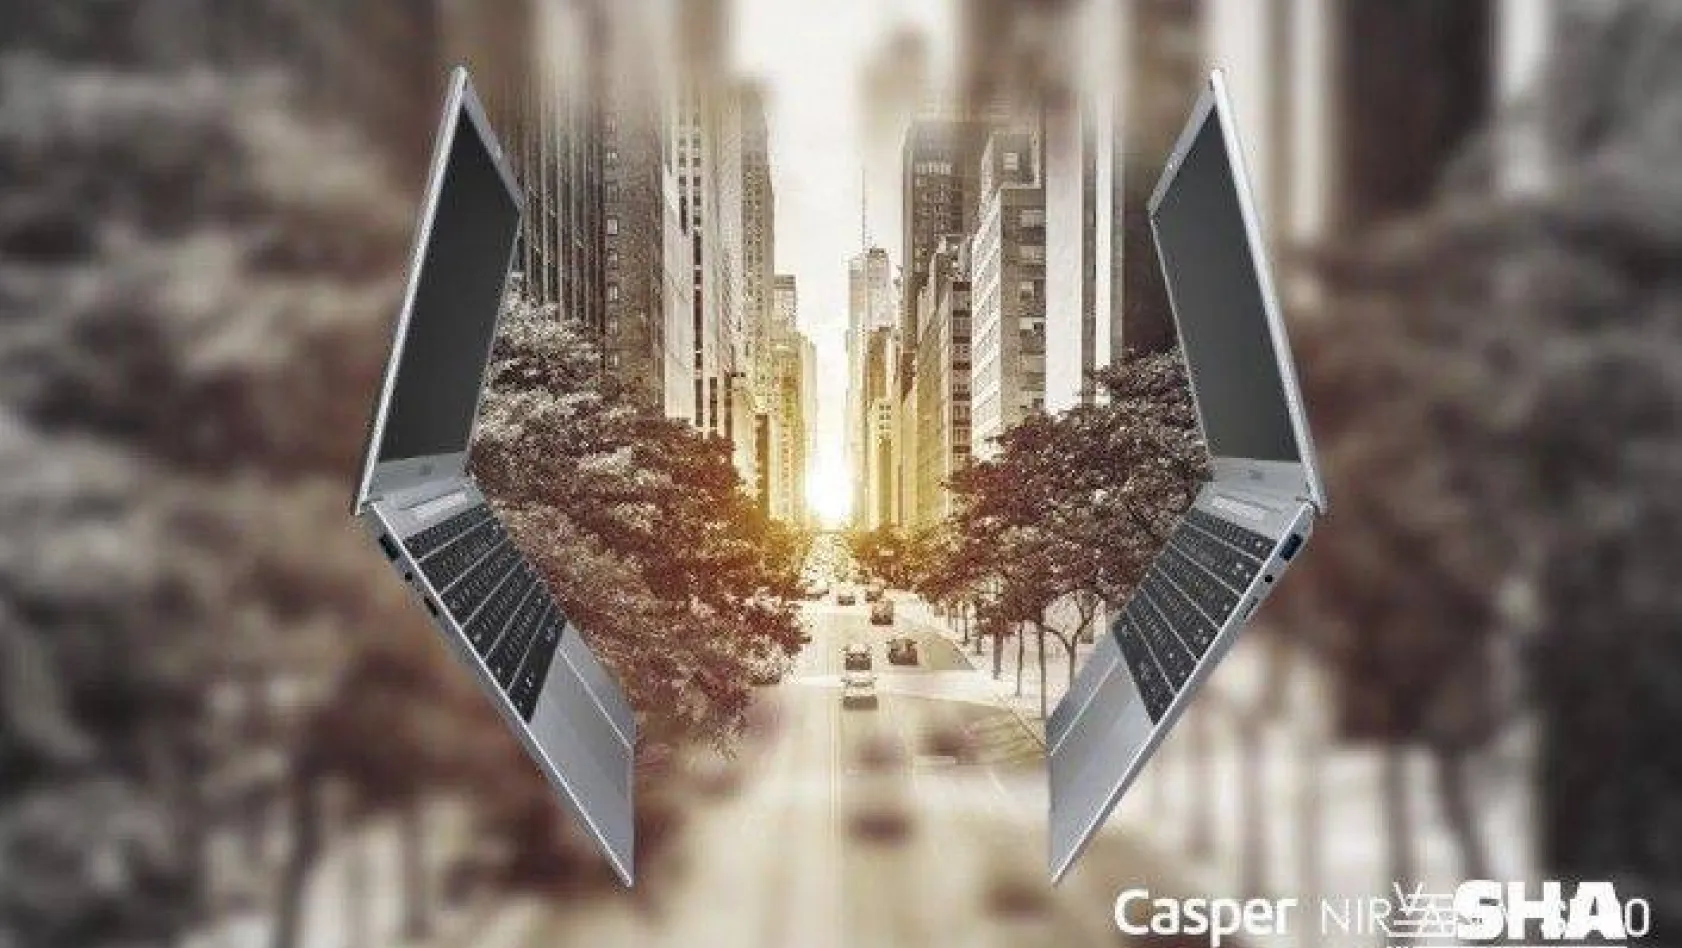 Casper, yeni Nirvana C350 Notebook'u tanıttı